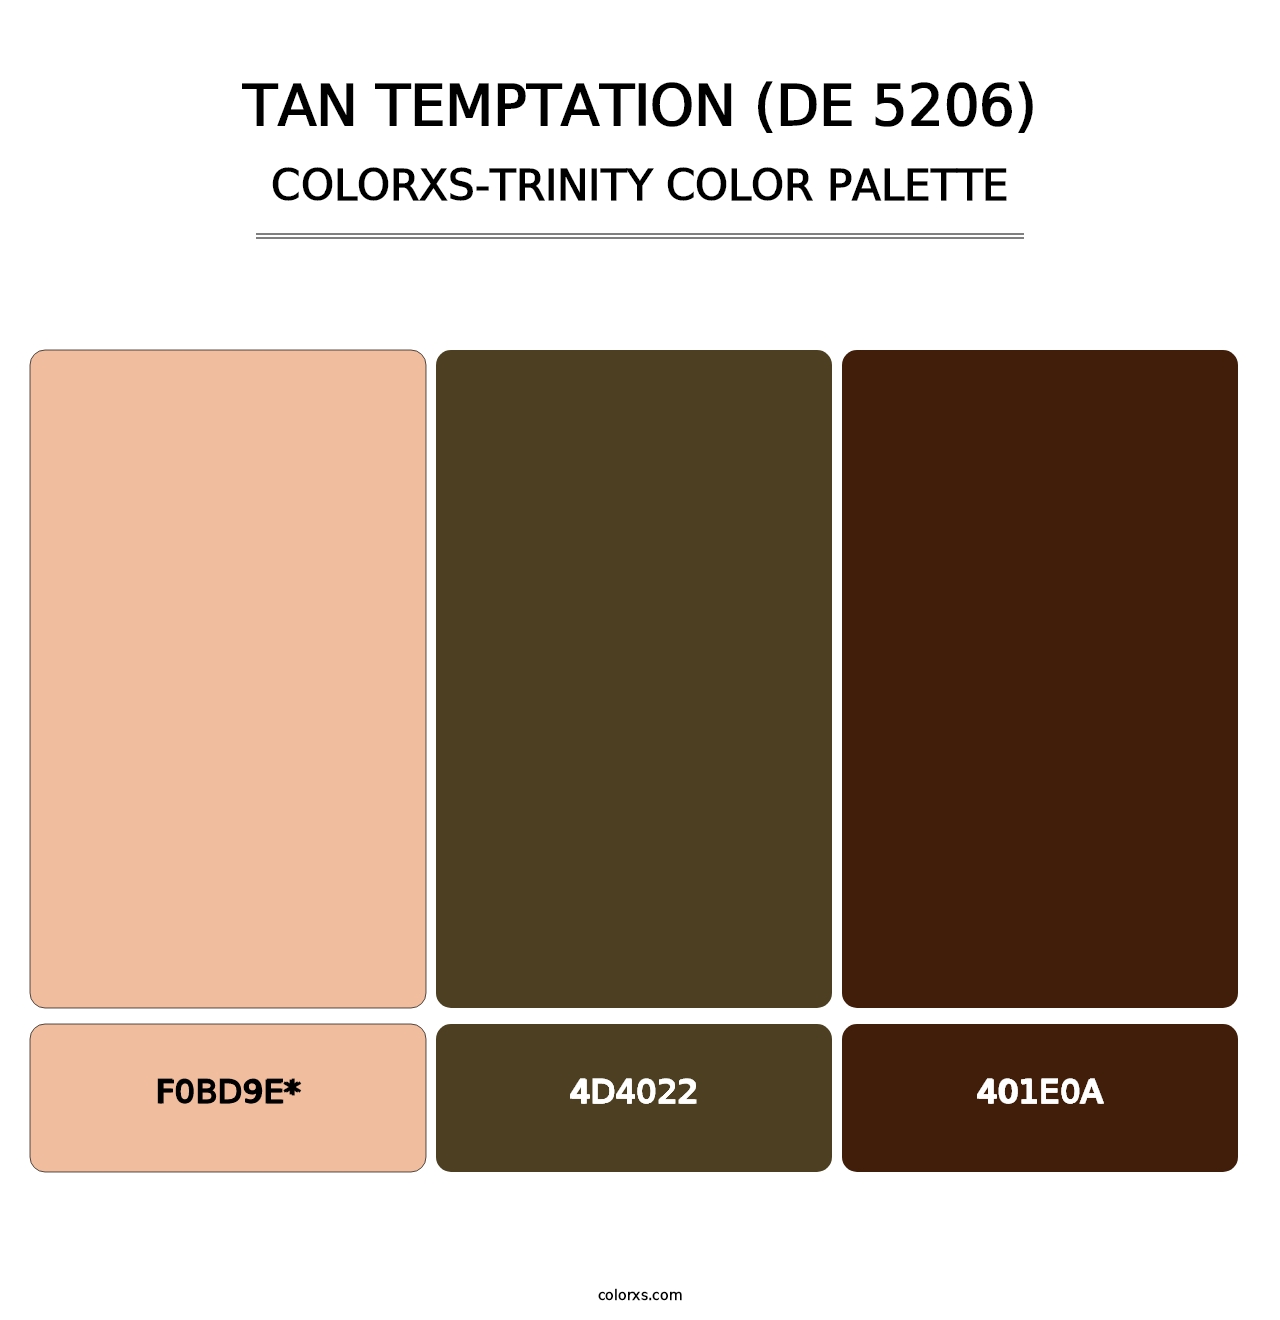 Tan Temptation (DE 5206) - Colorxs Trinity Palette